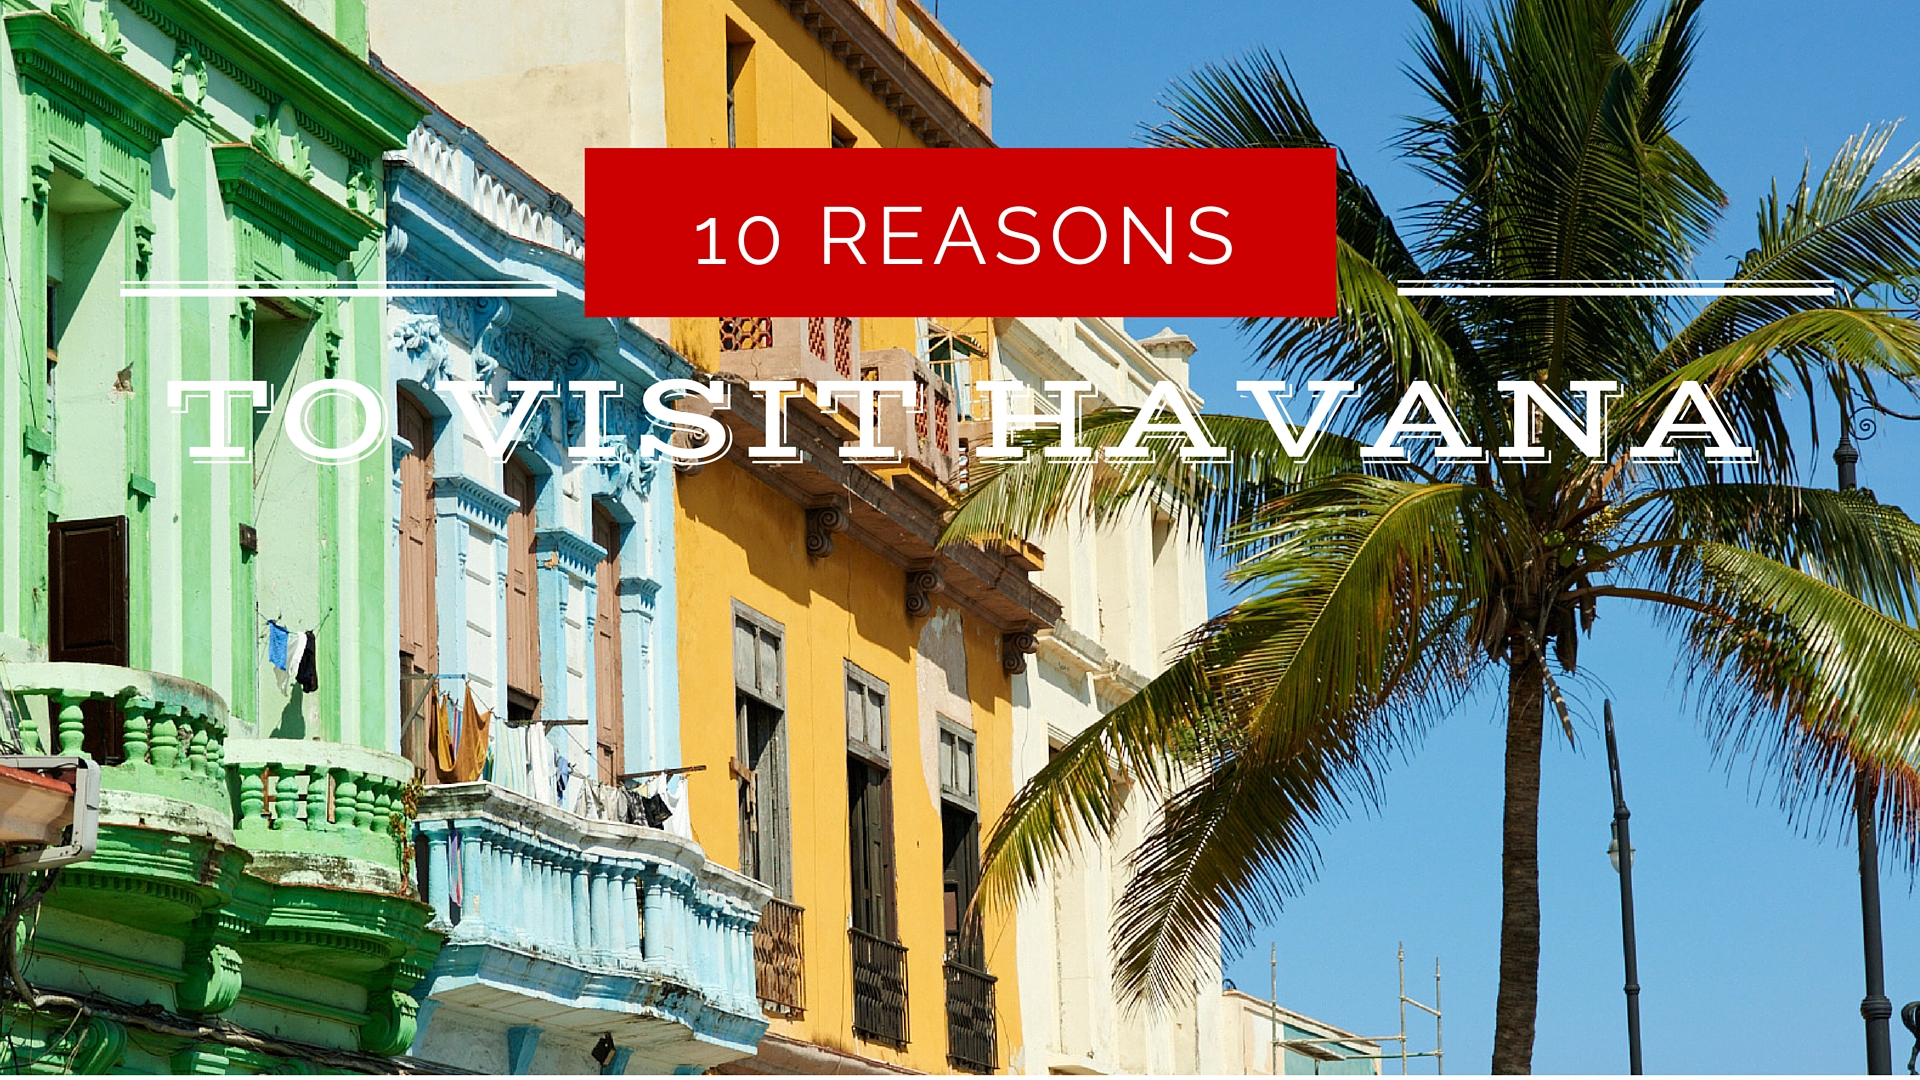 reasons to visit havana